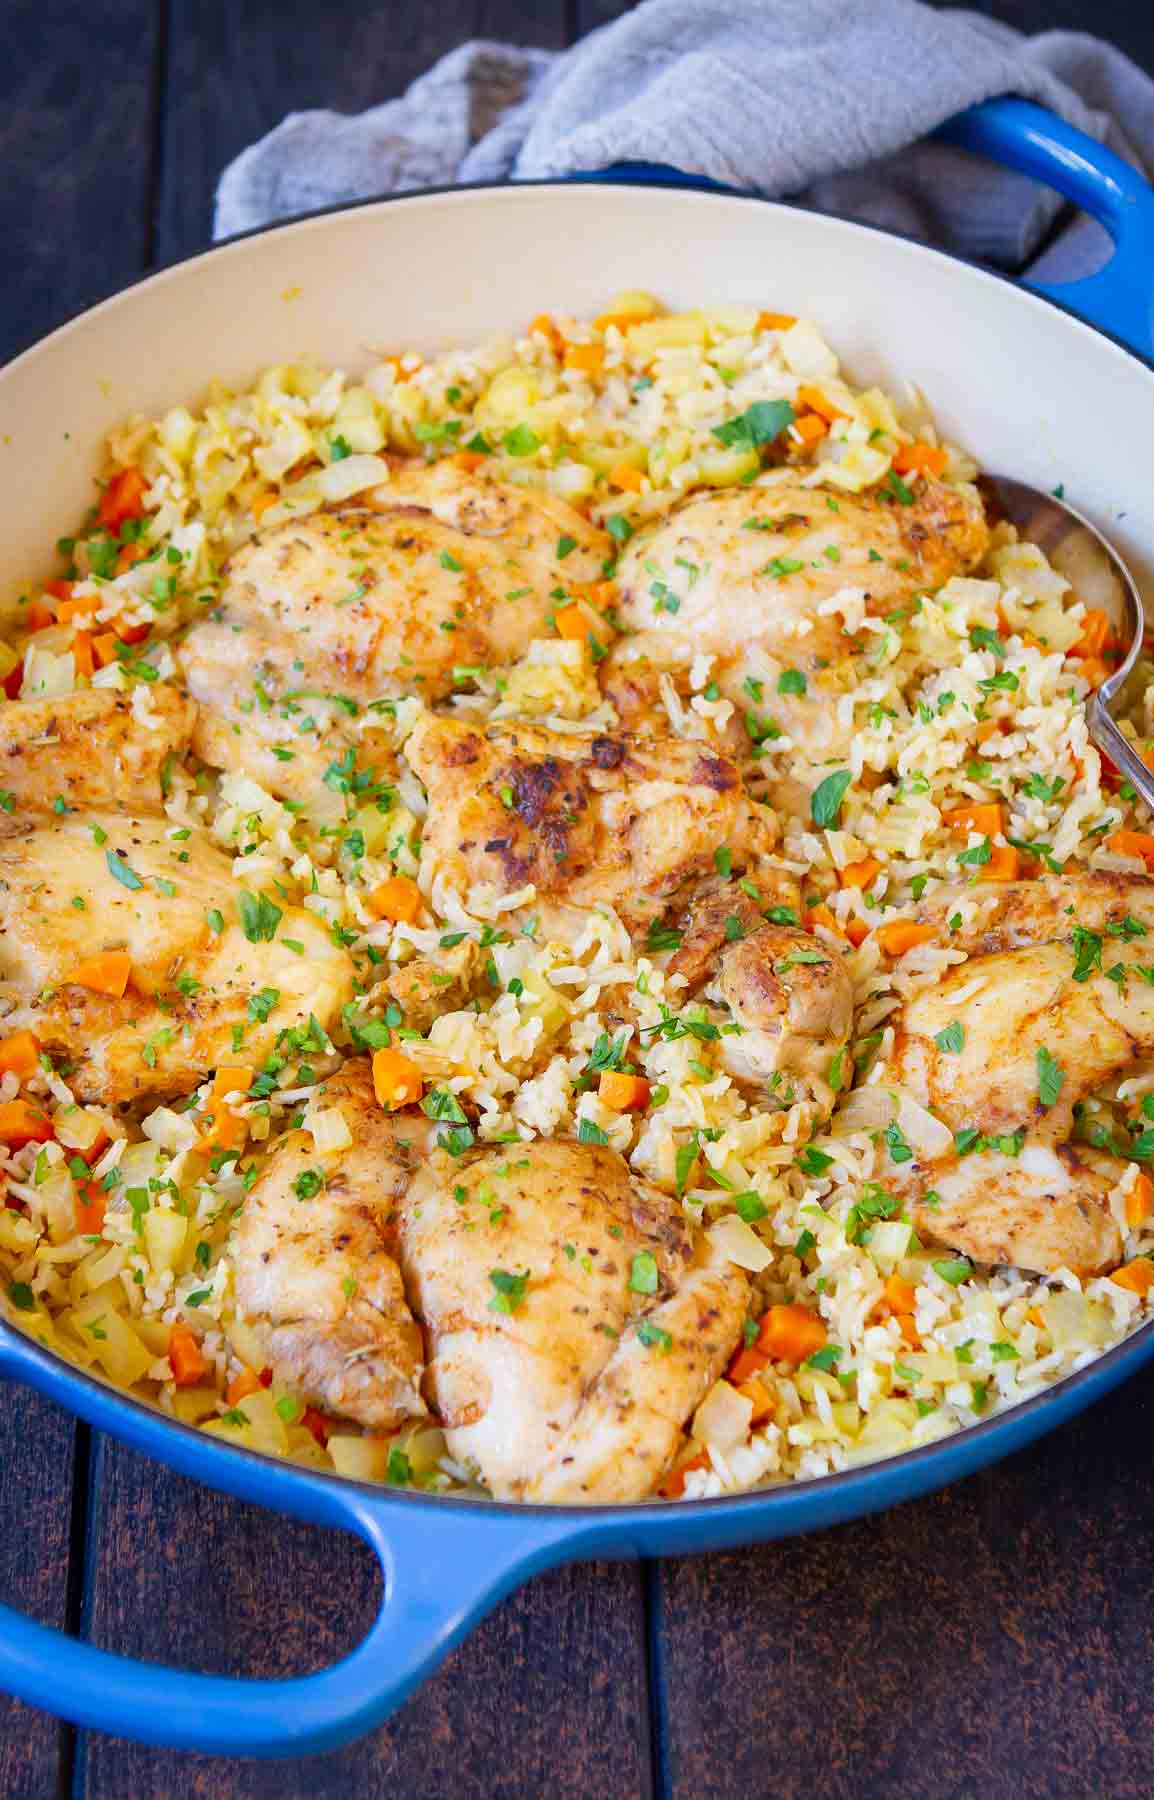 Gotowany kurczak i ryż z przyprawami i warzywami na niebieskiej patelni.